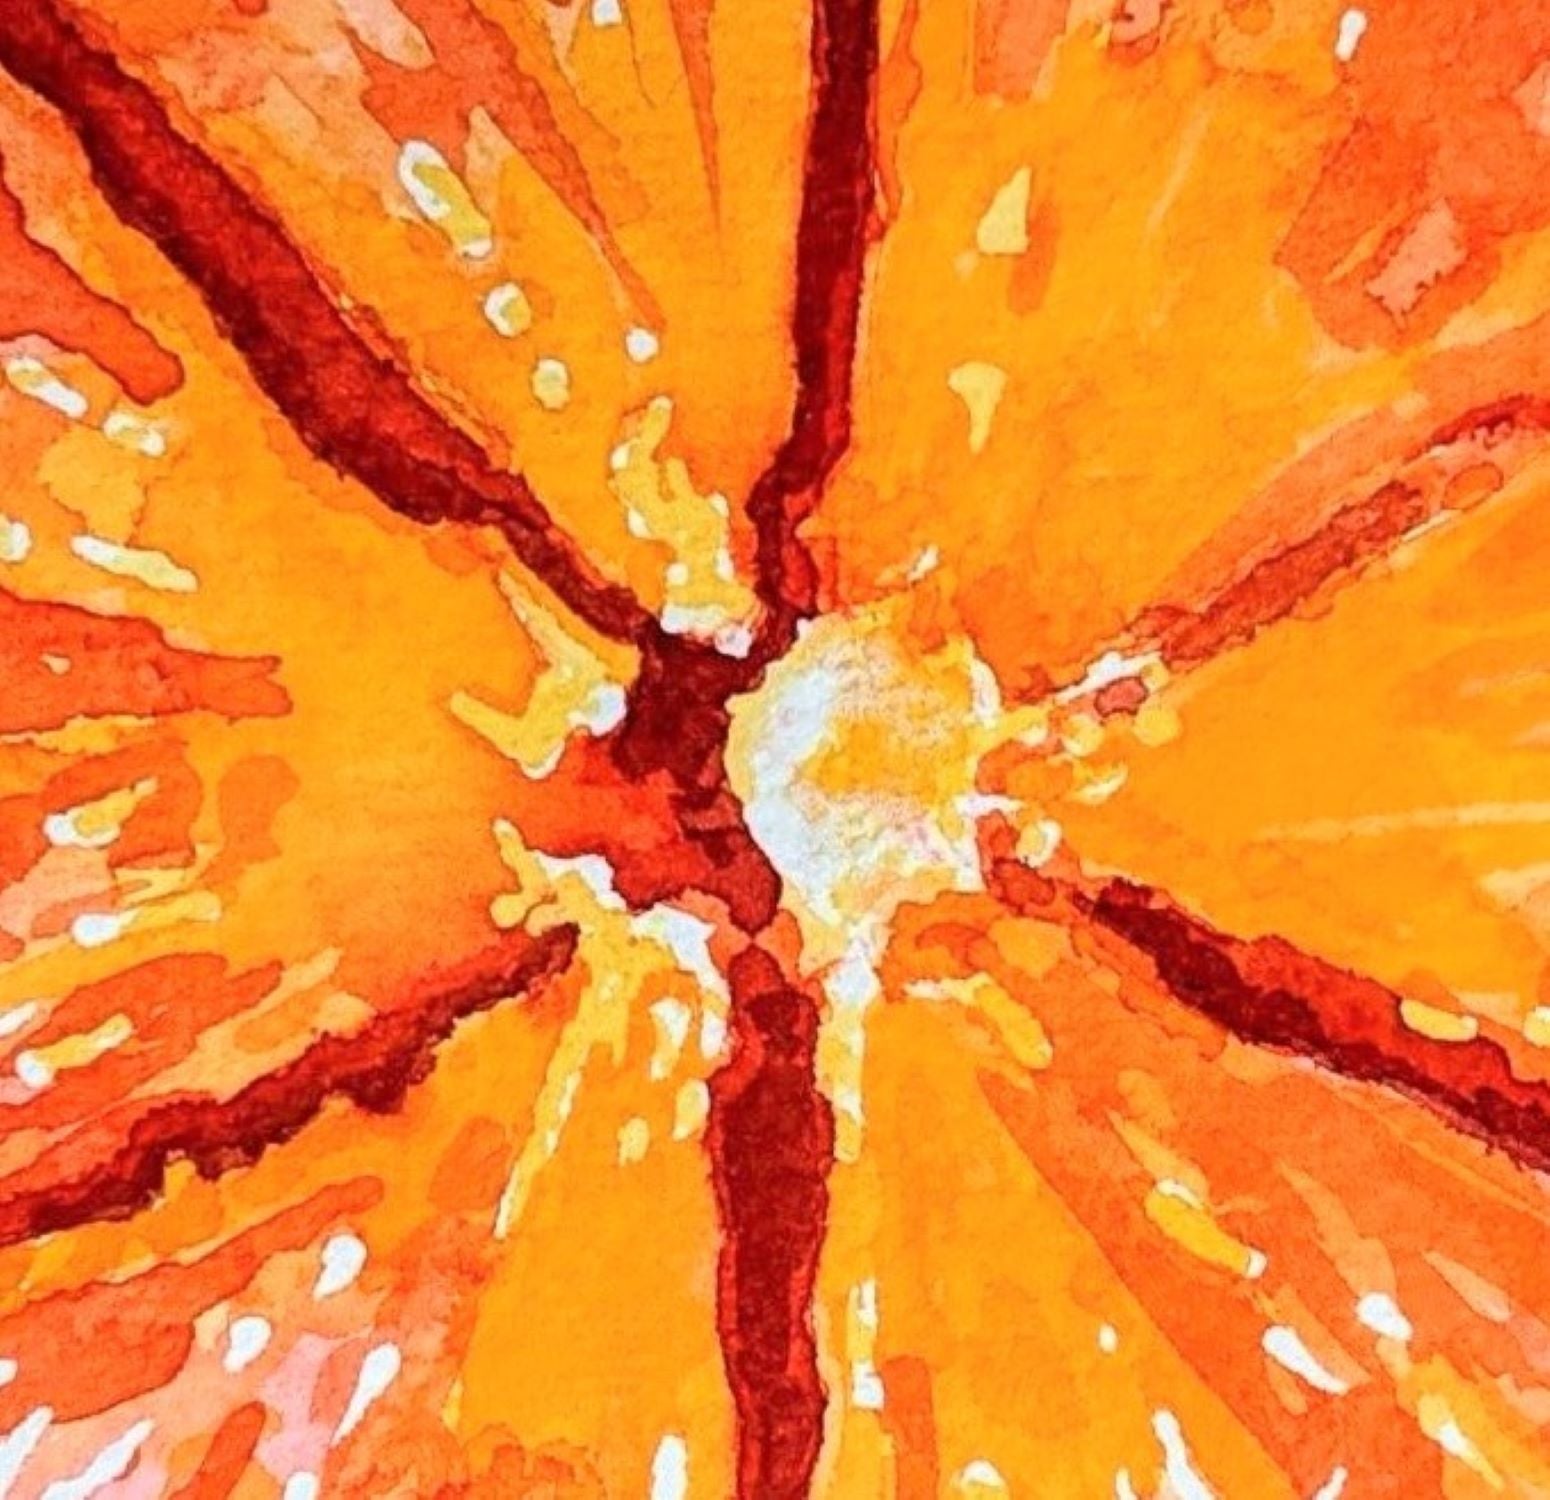 Orange slice watercolor painting detail